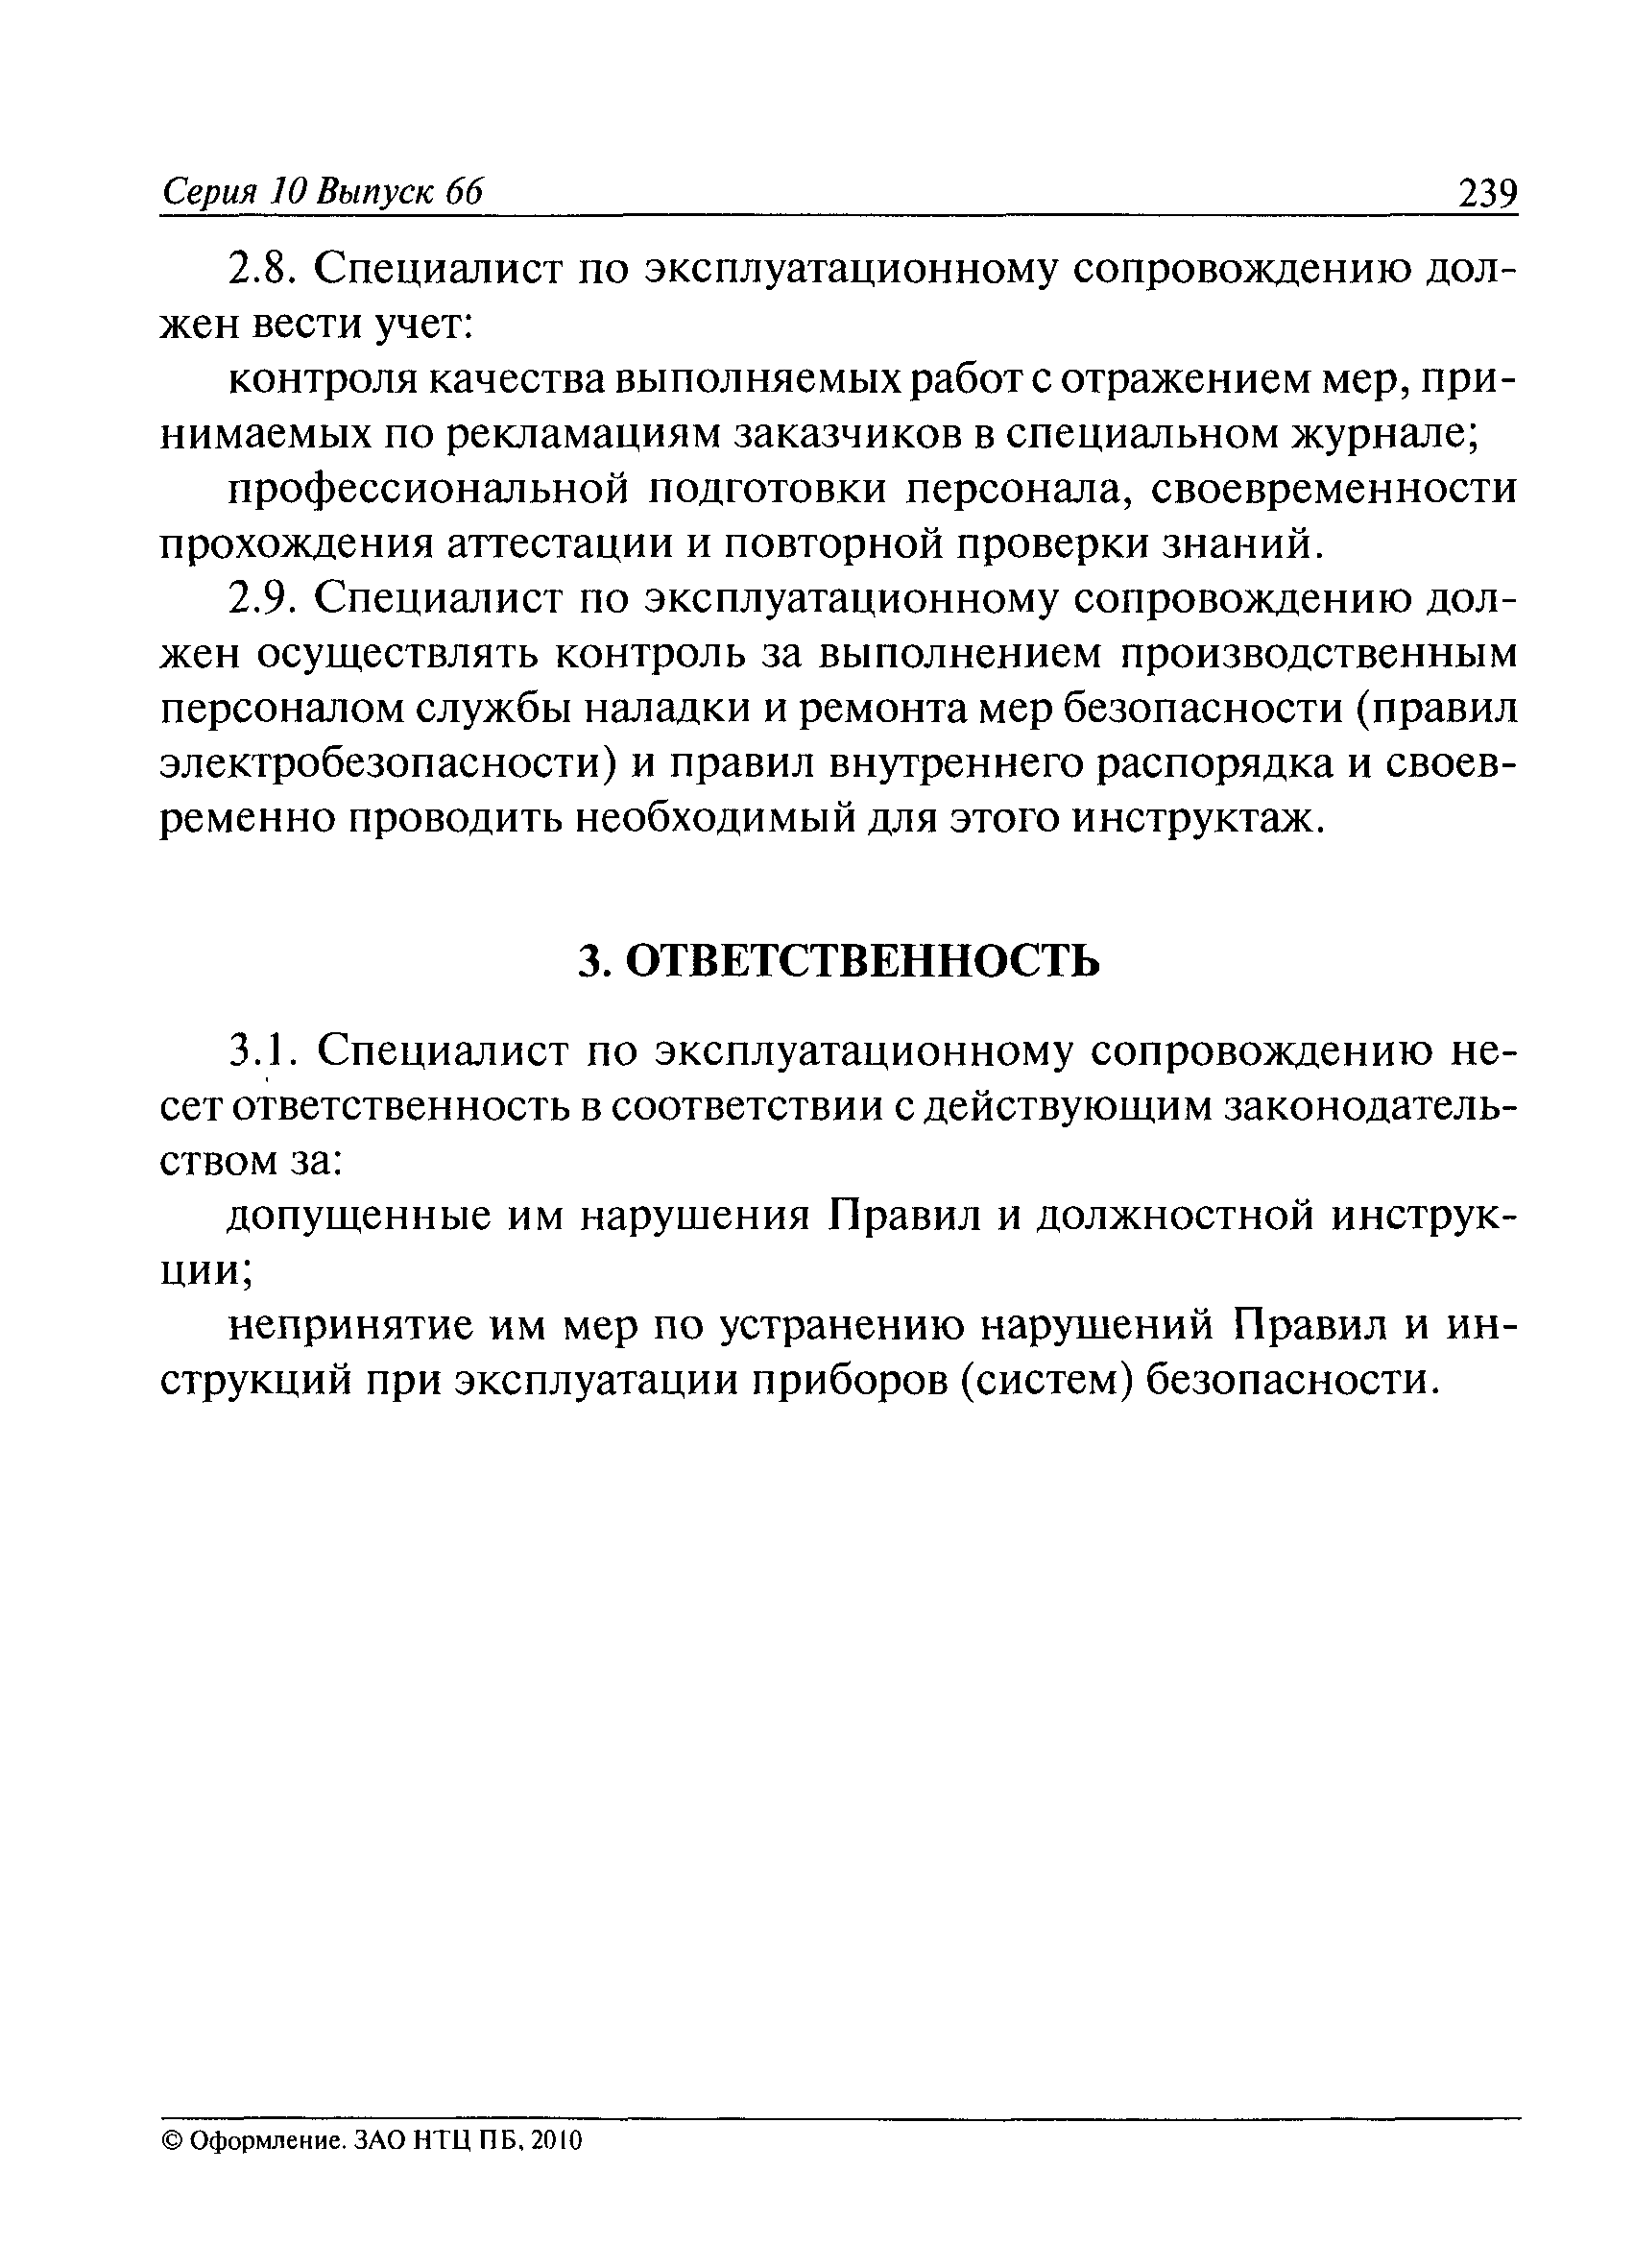 РД СМА 004-04